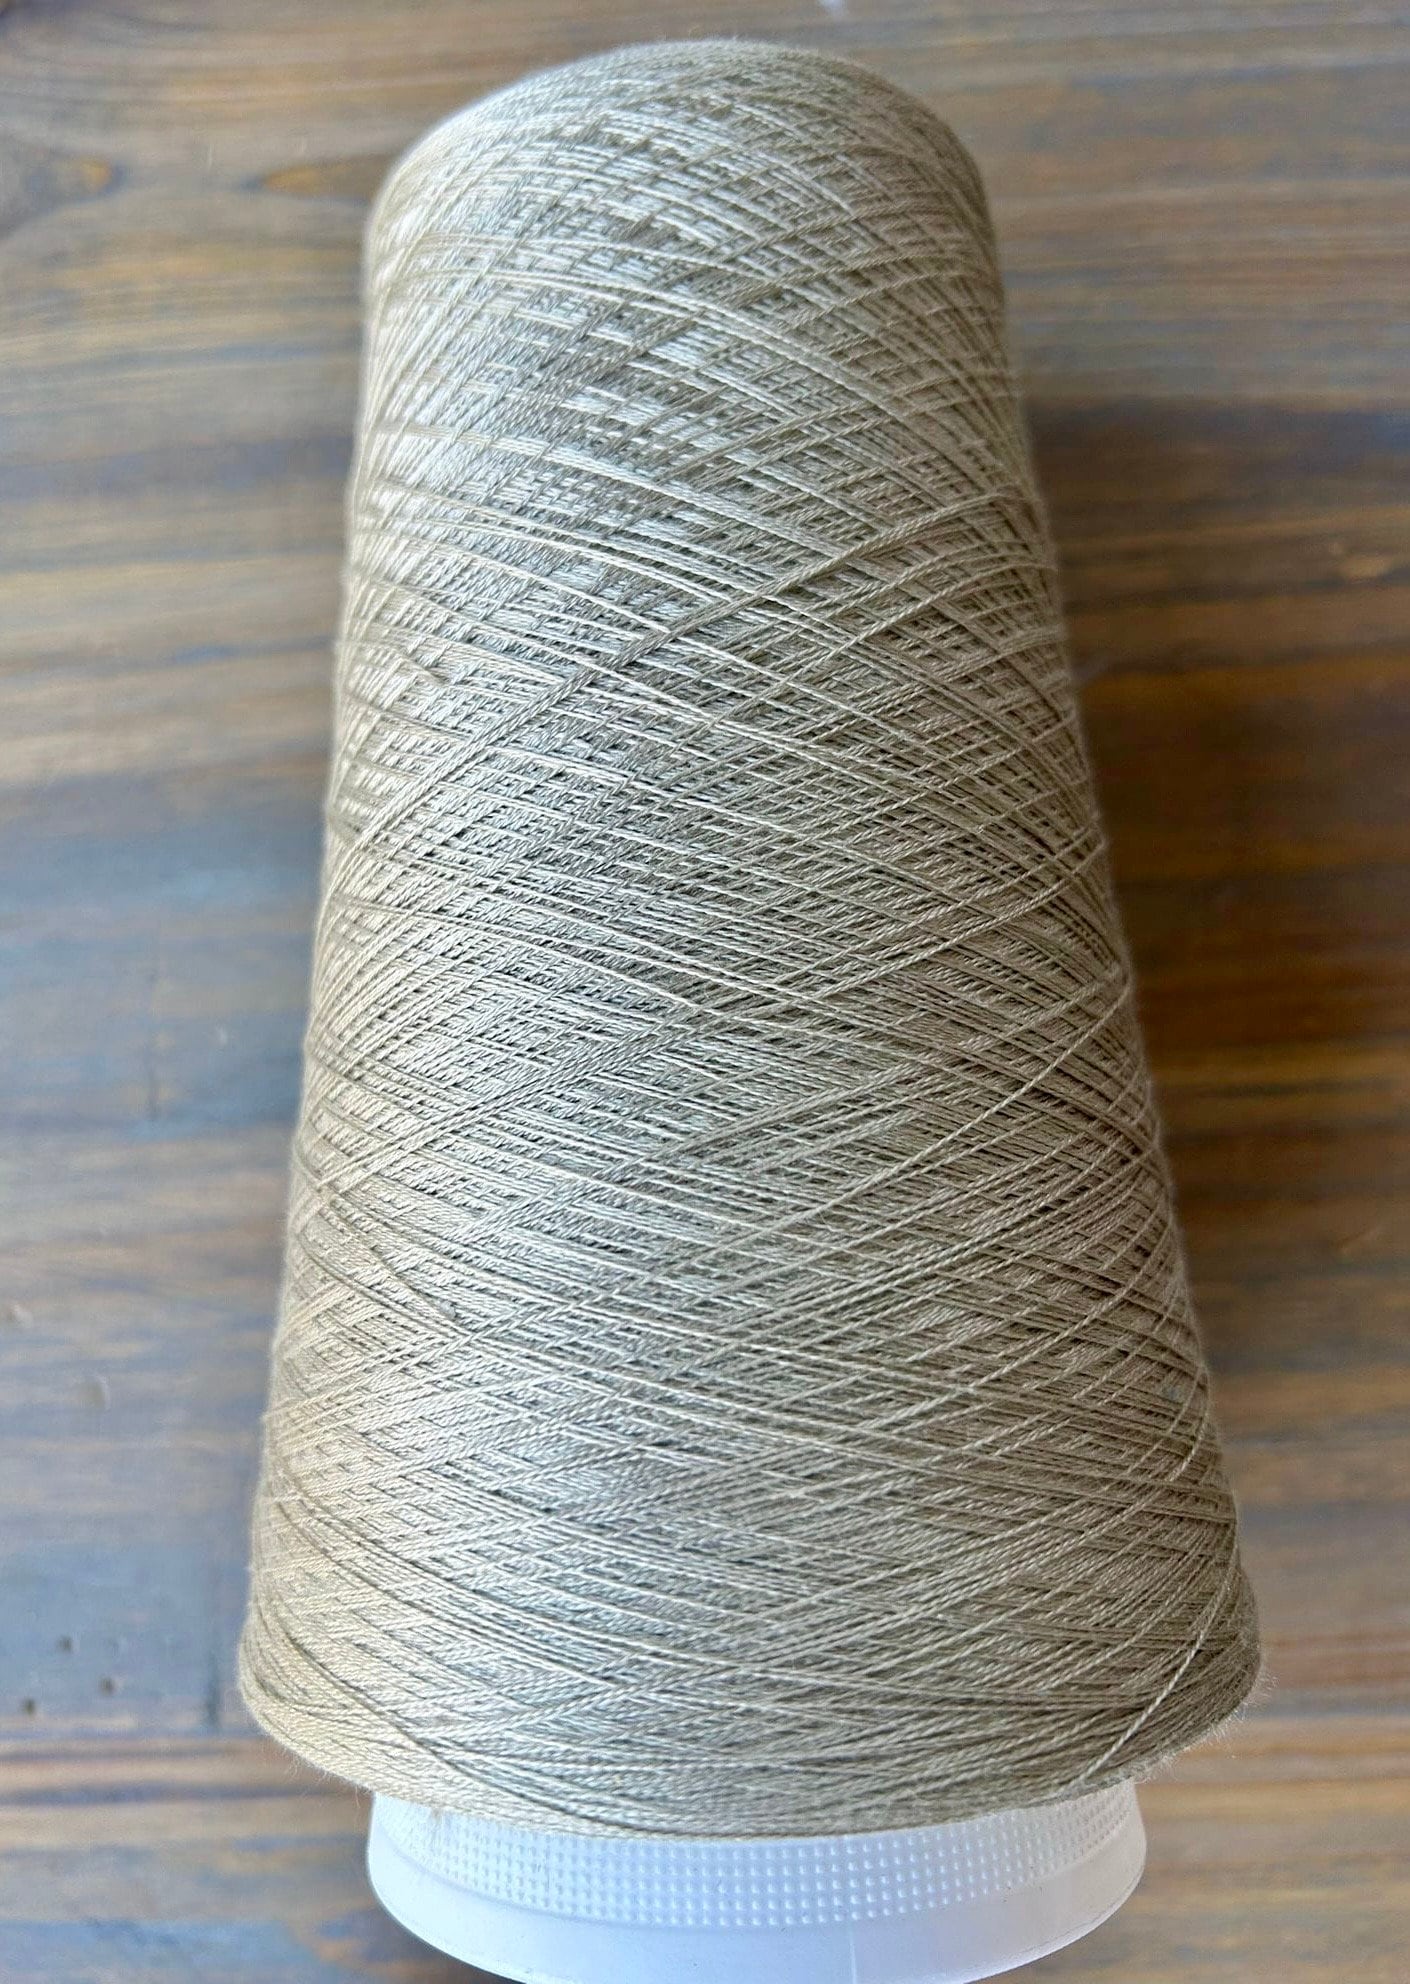 Silk Cotton Yarn, Scheepjes Secret Garden, Silk and Cotton, Summer